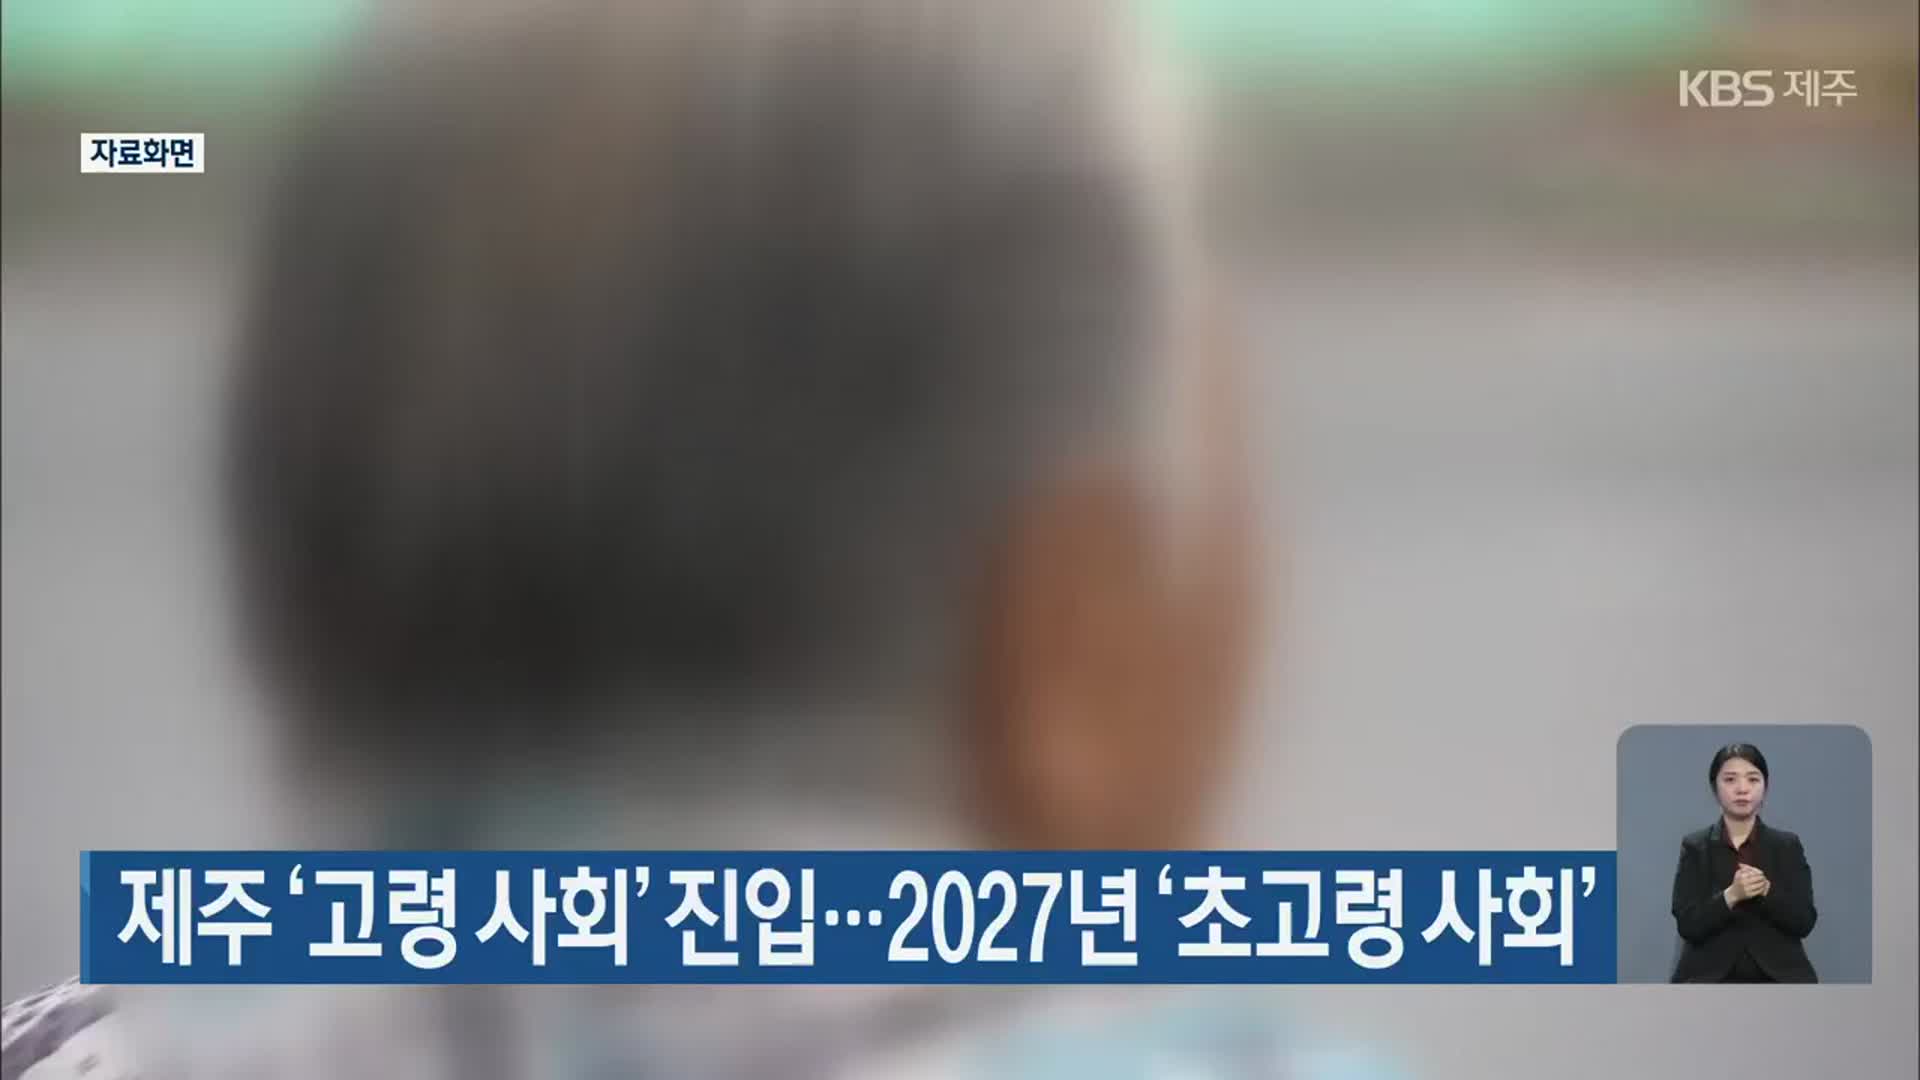 제주 ‘고령 사회’ 진입…2027년 ‘초고령 사회’